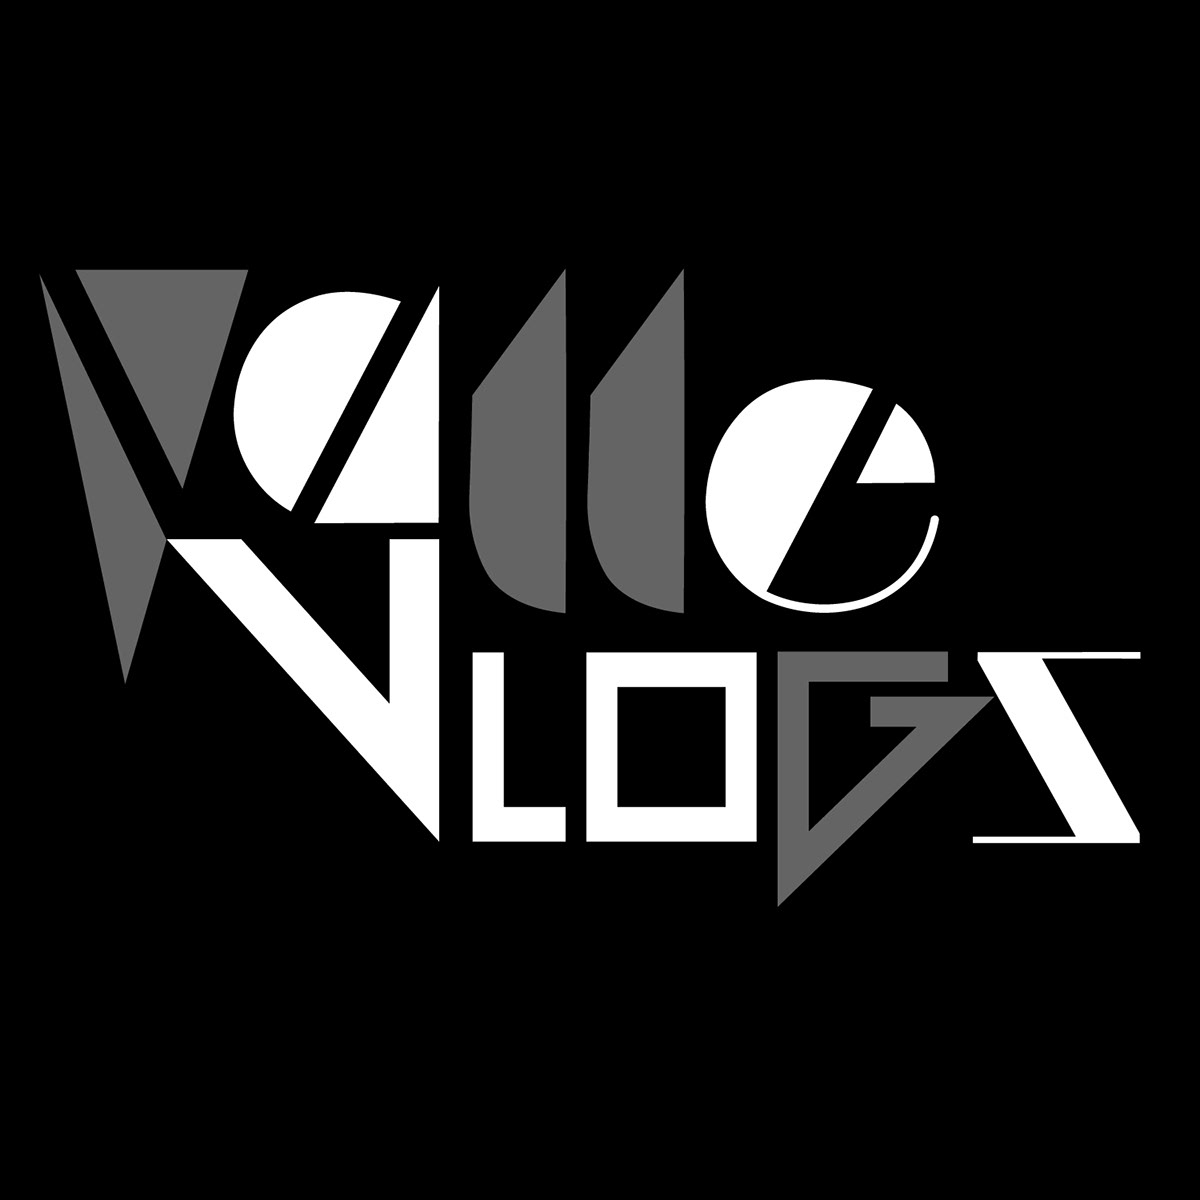 Diseño de logotipo ValleVlogs